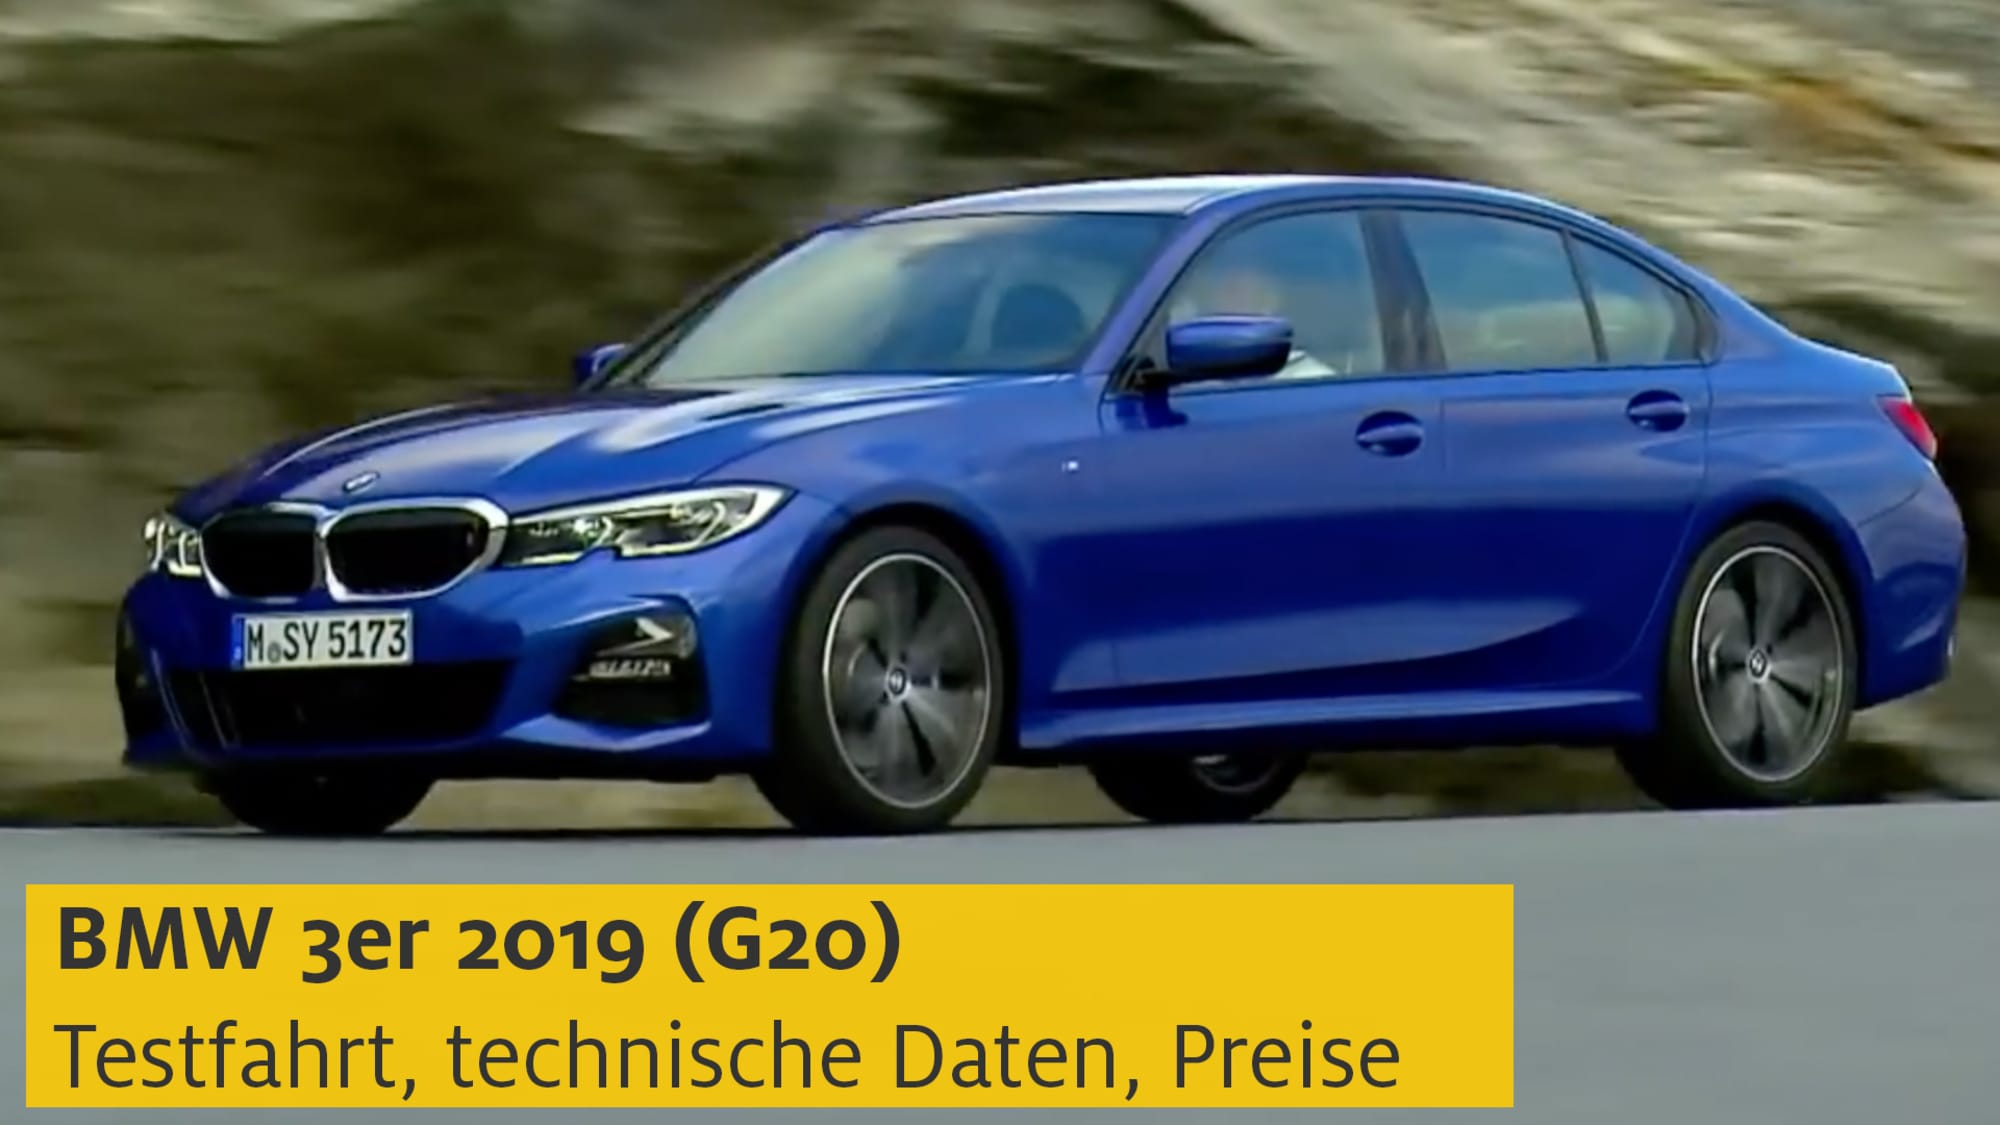 3 Er Bmw / Video: BMW 3er Touring (2019) - AUTO BILD / Bmw bringt den neuen 3er touring.